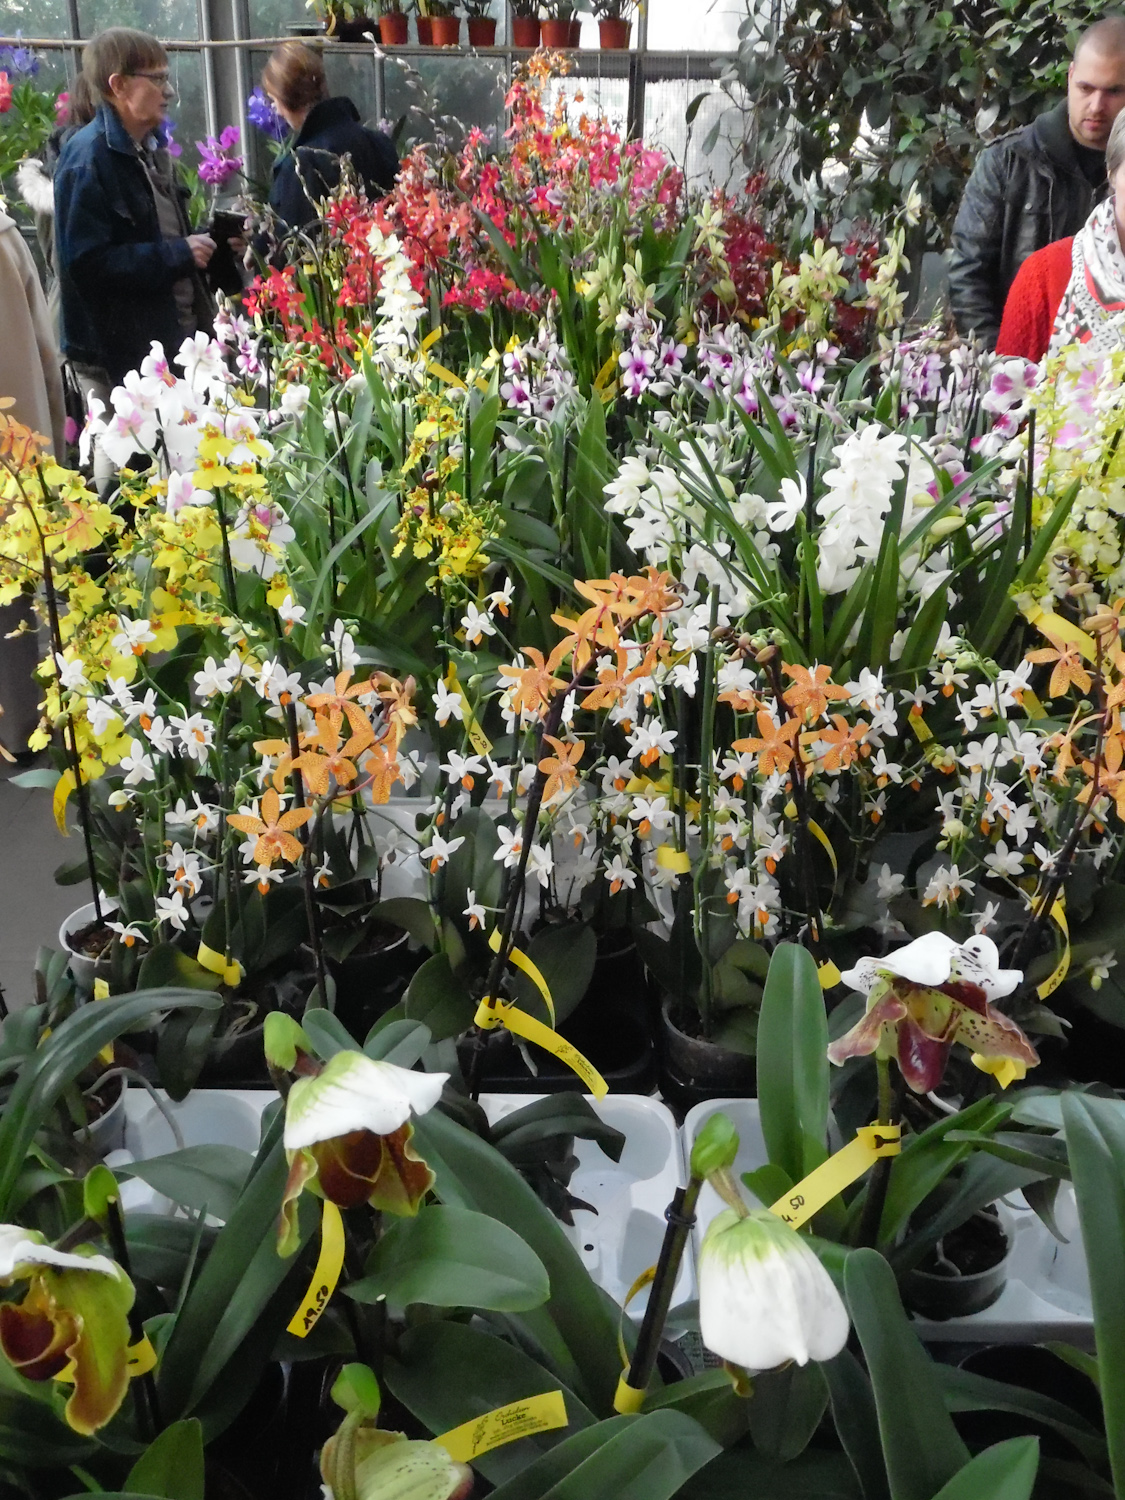 Fantastic orchid displays